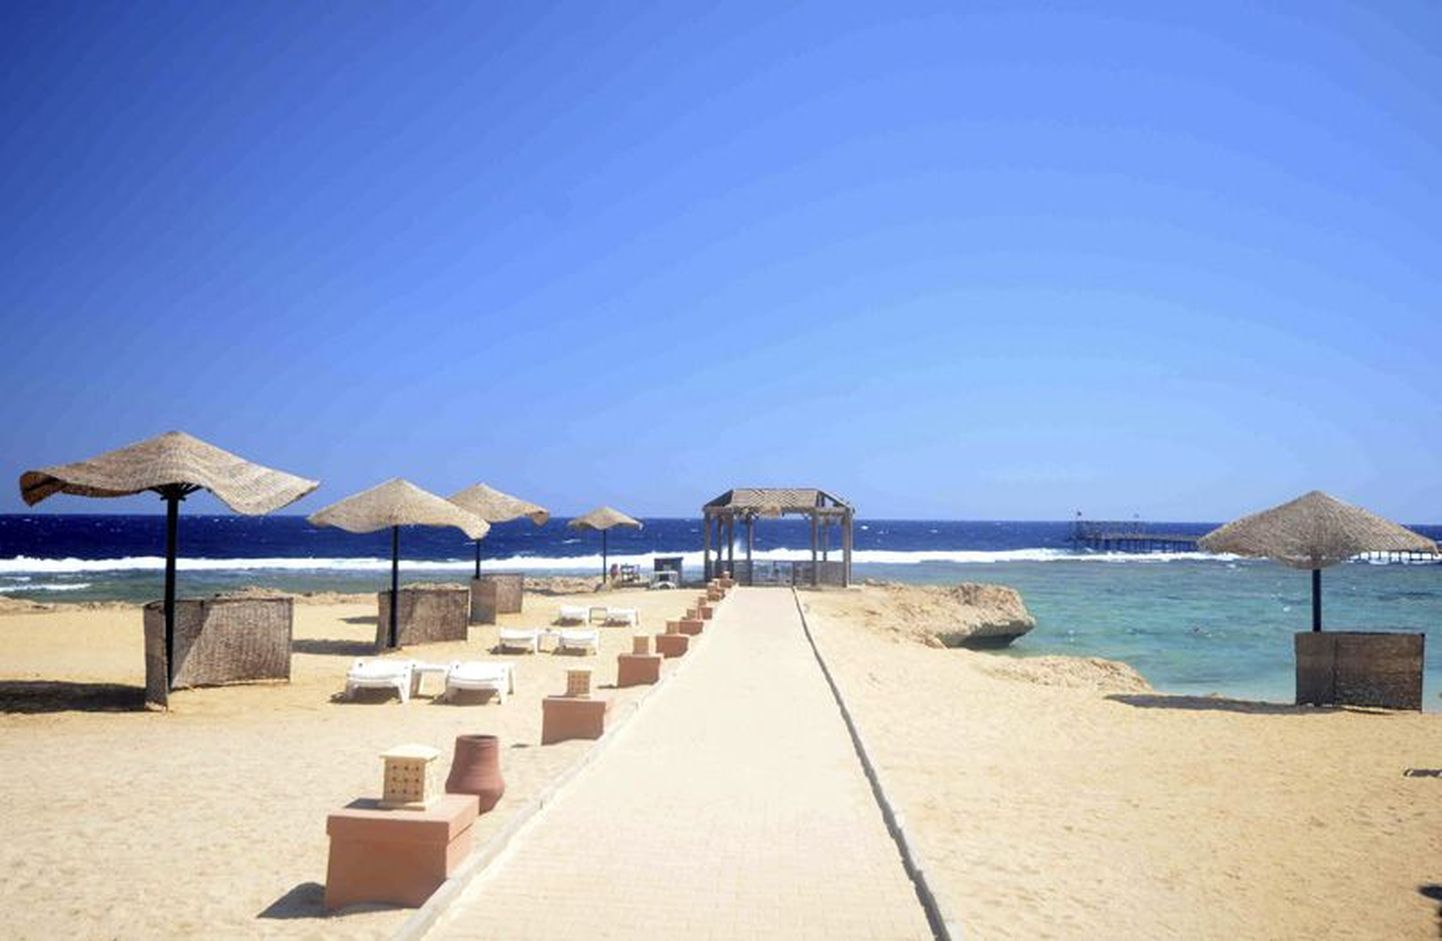 Turistid on eestlaste seas armastatud puhkusepaiga Sharm el Sheikhi peale lennukatastroofi hüljanud, küll aga võib jätkuvalt reisida teise Punase mere ääres asuvasse kuurortlinna Hurghadasse.